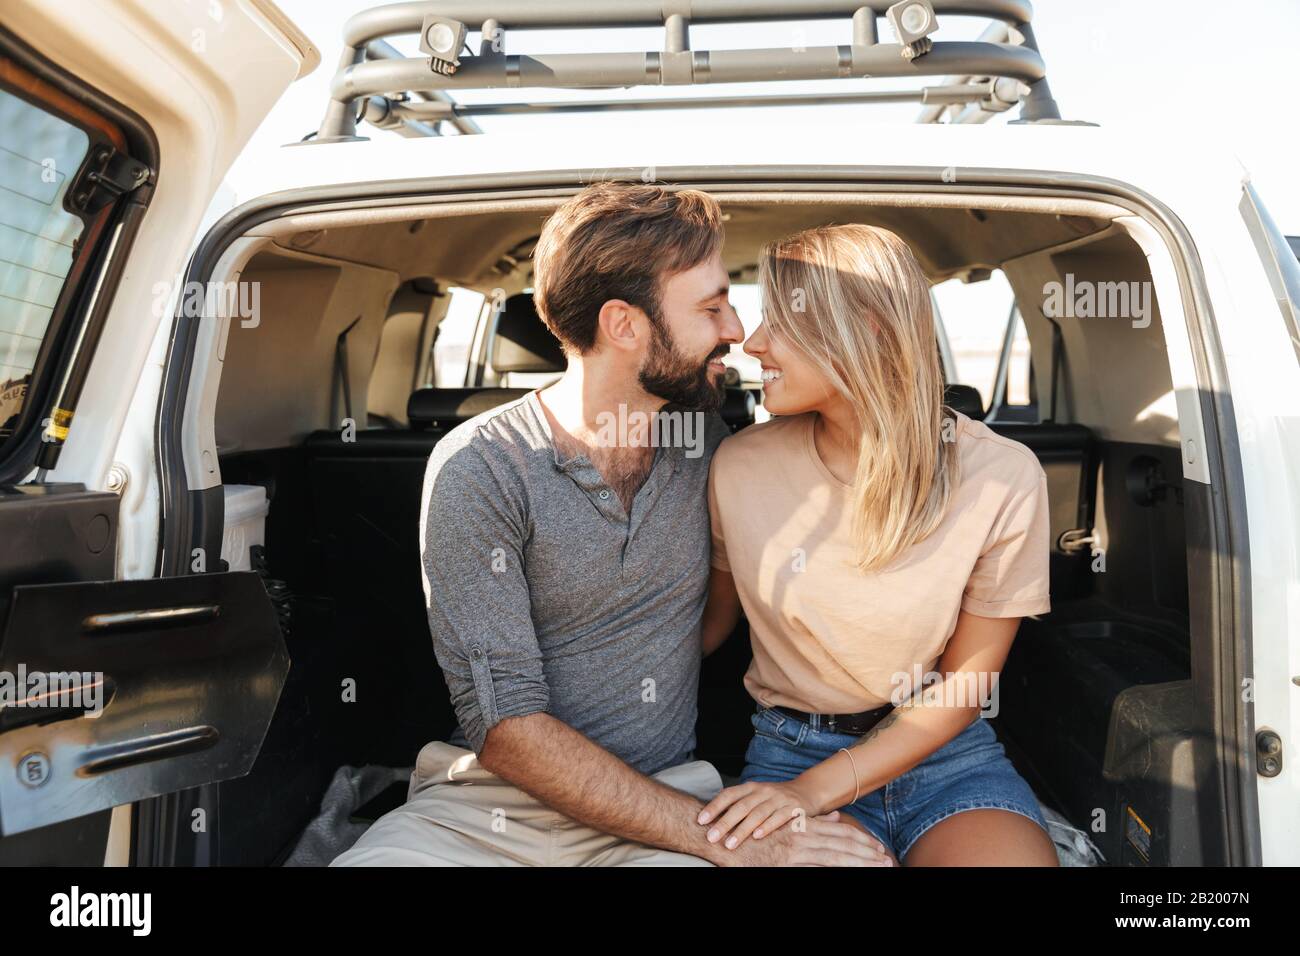 Image d'un heureux heureux heureux jeune couple aimant extraordinaire plein air ensergeant en voiture à la plage. Banque D'Images